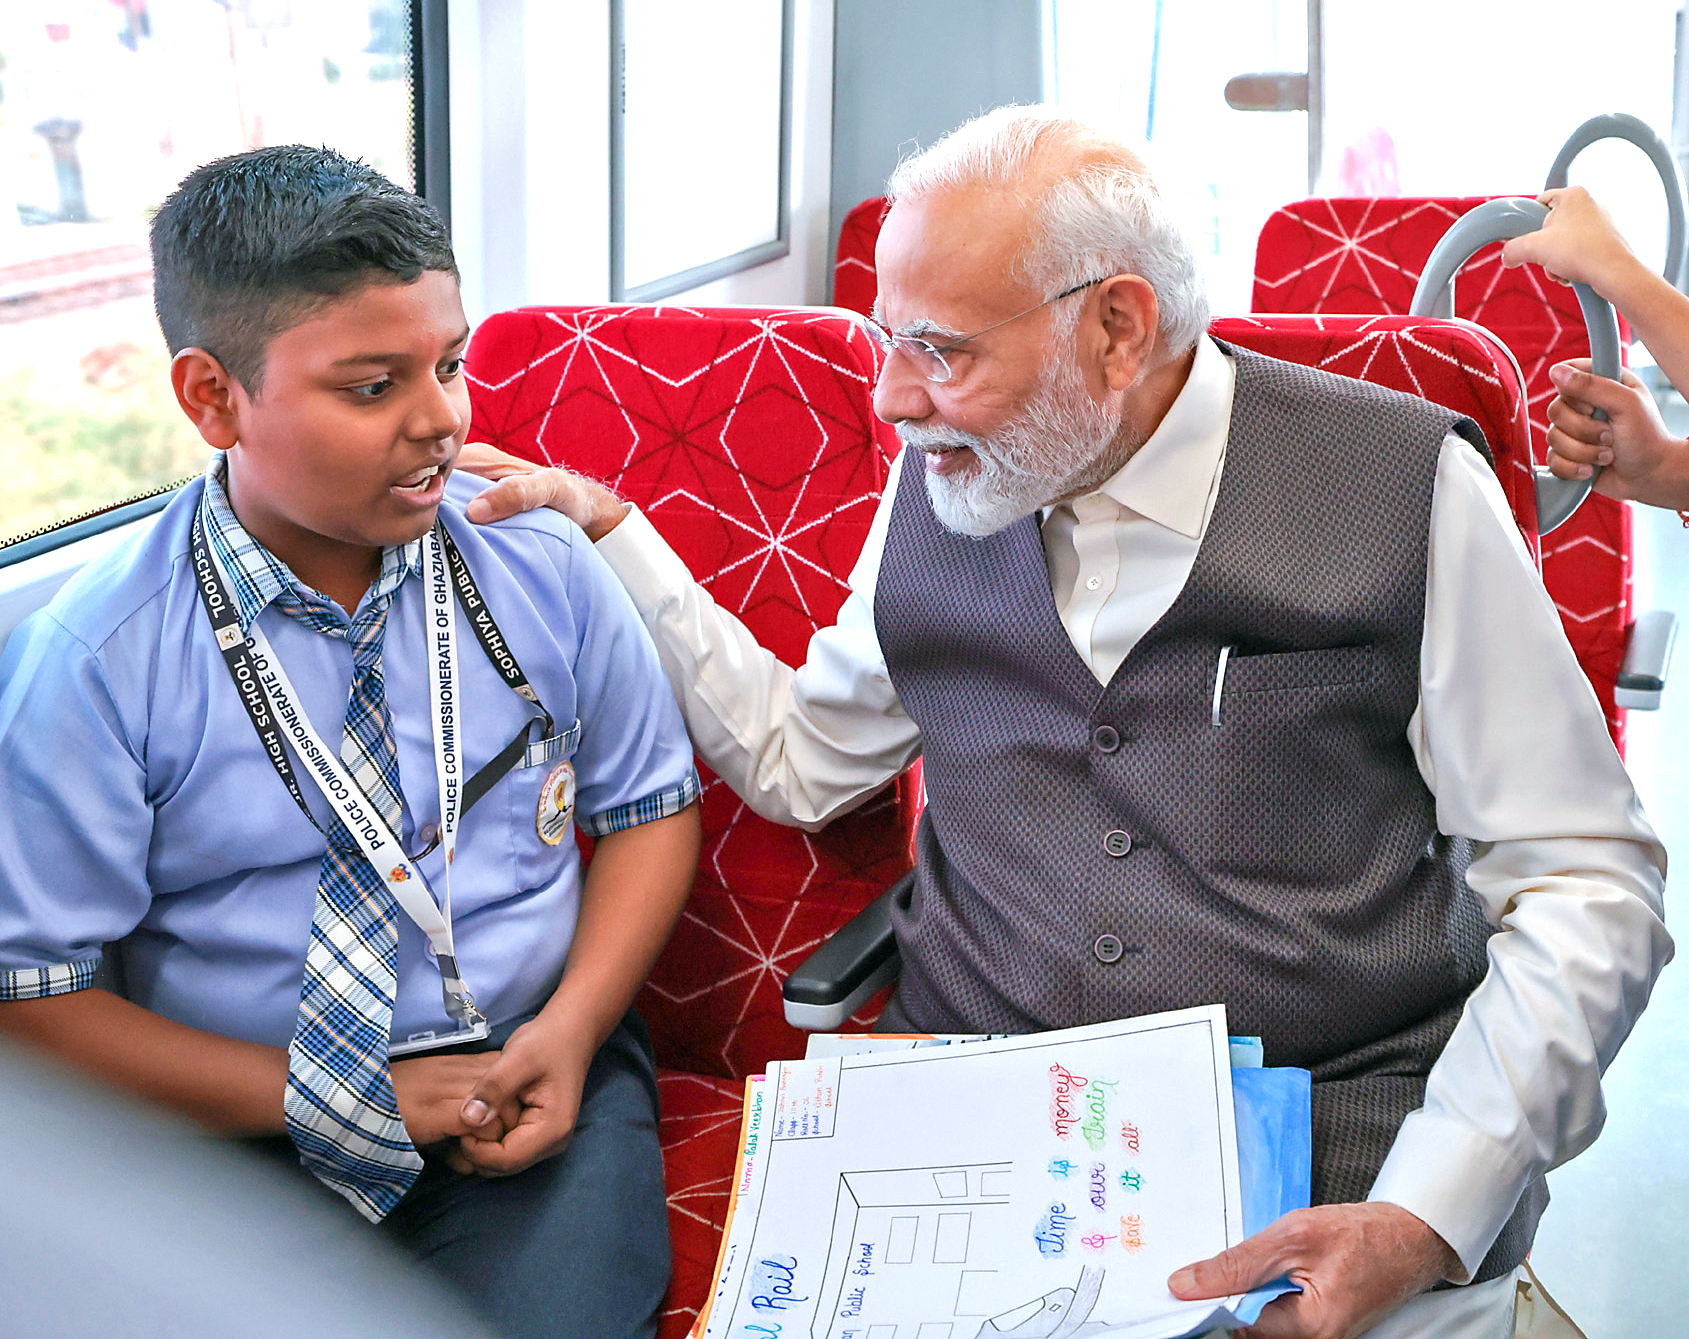 PM Modi interacts with school children.